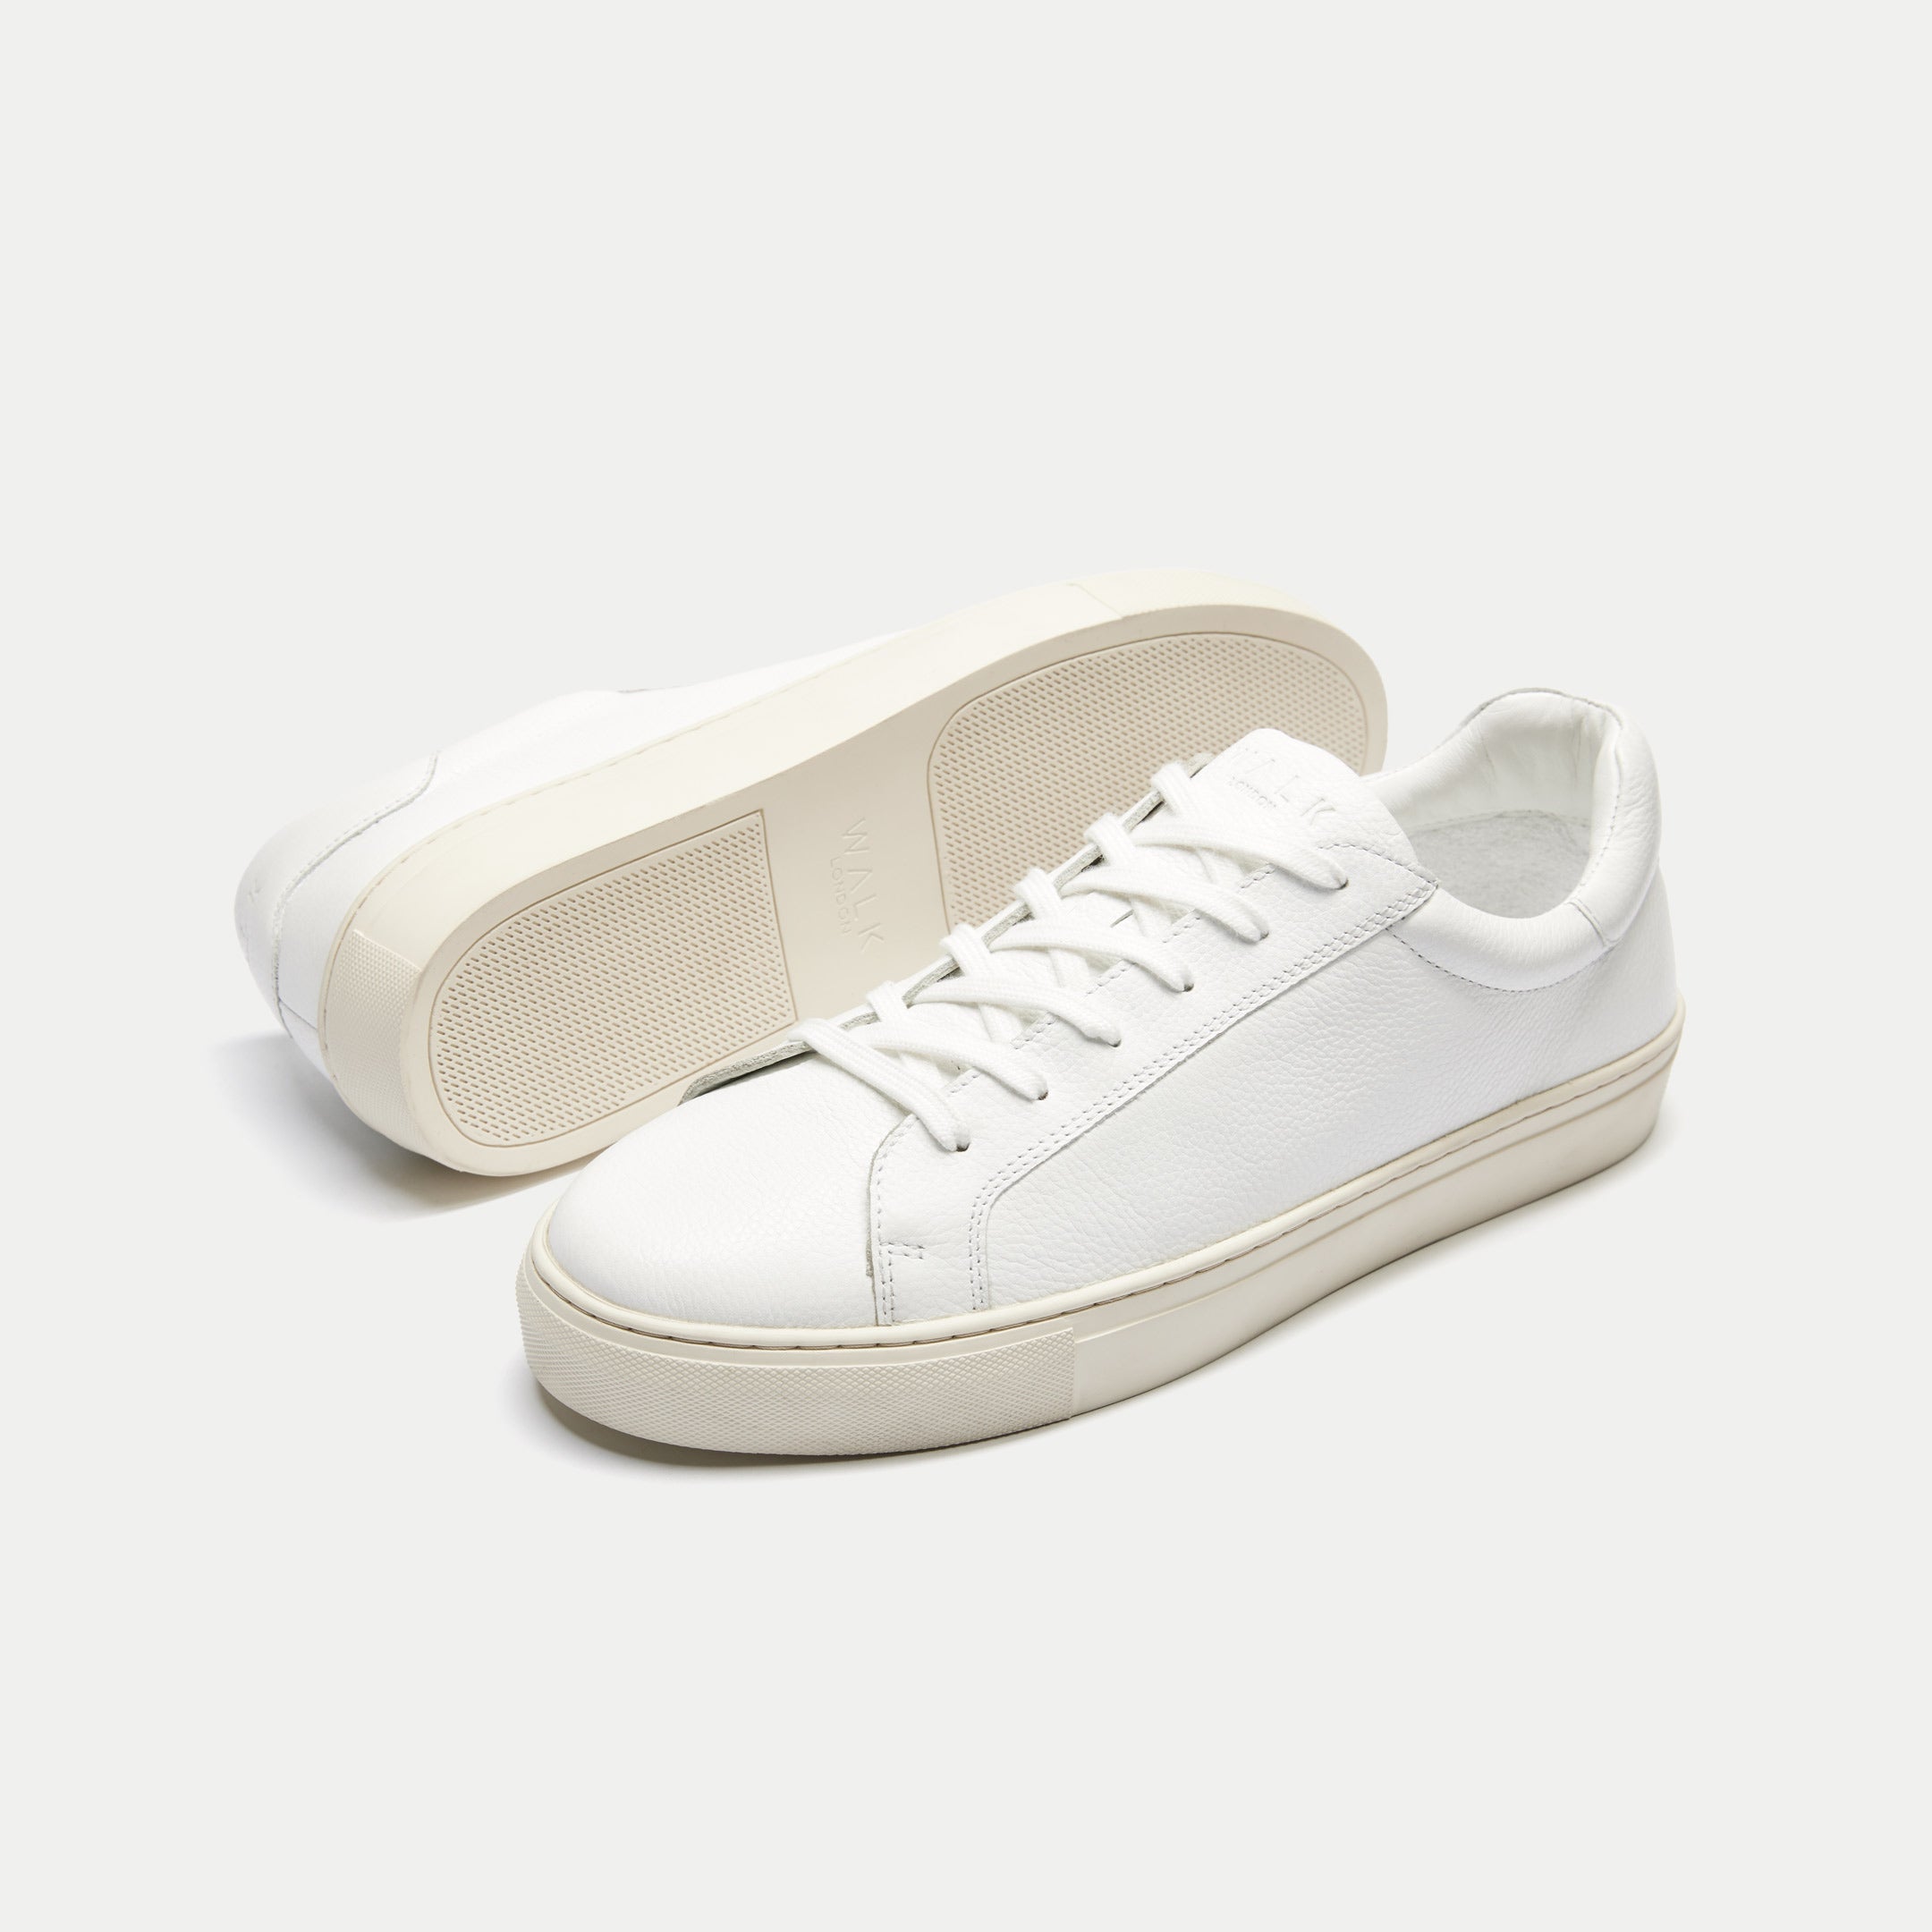 Walk London Mens Harrison Sneaker in White Leather